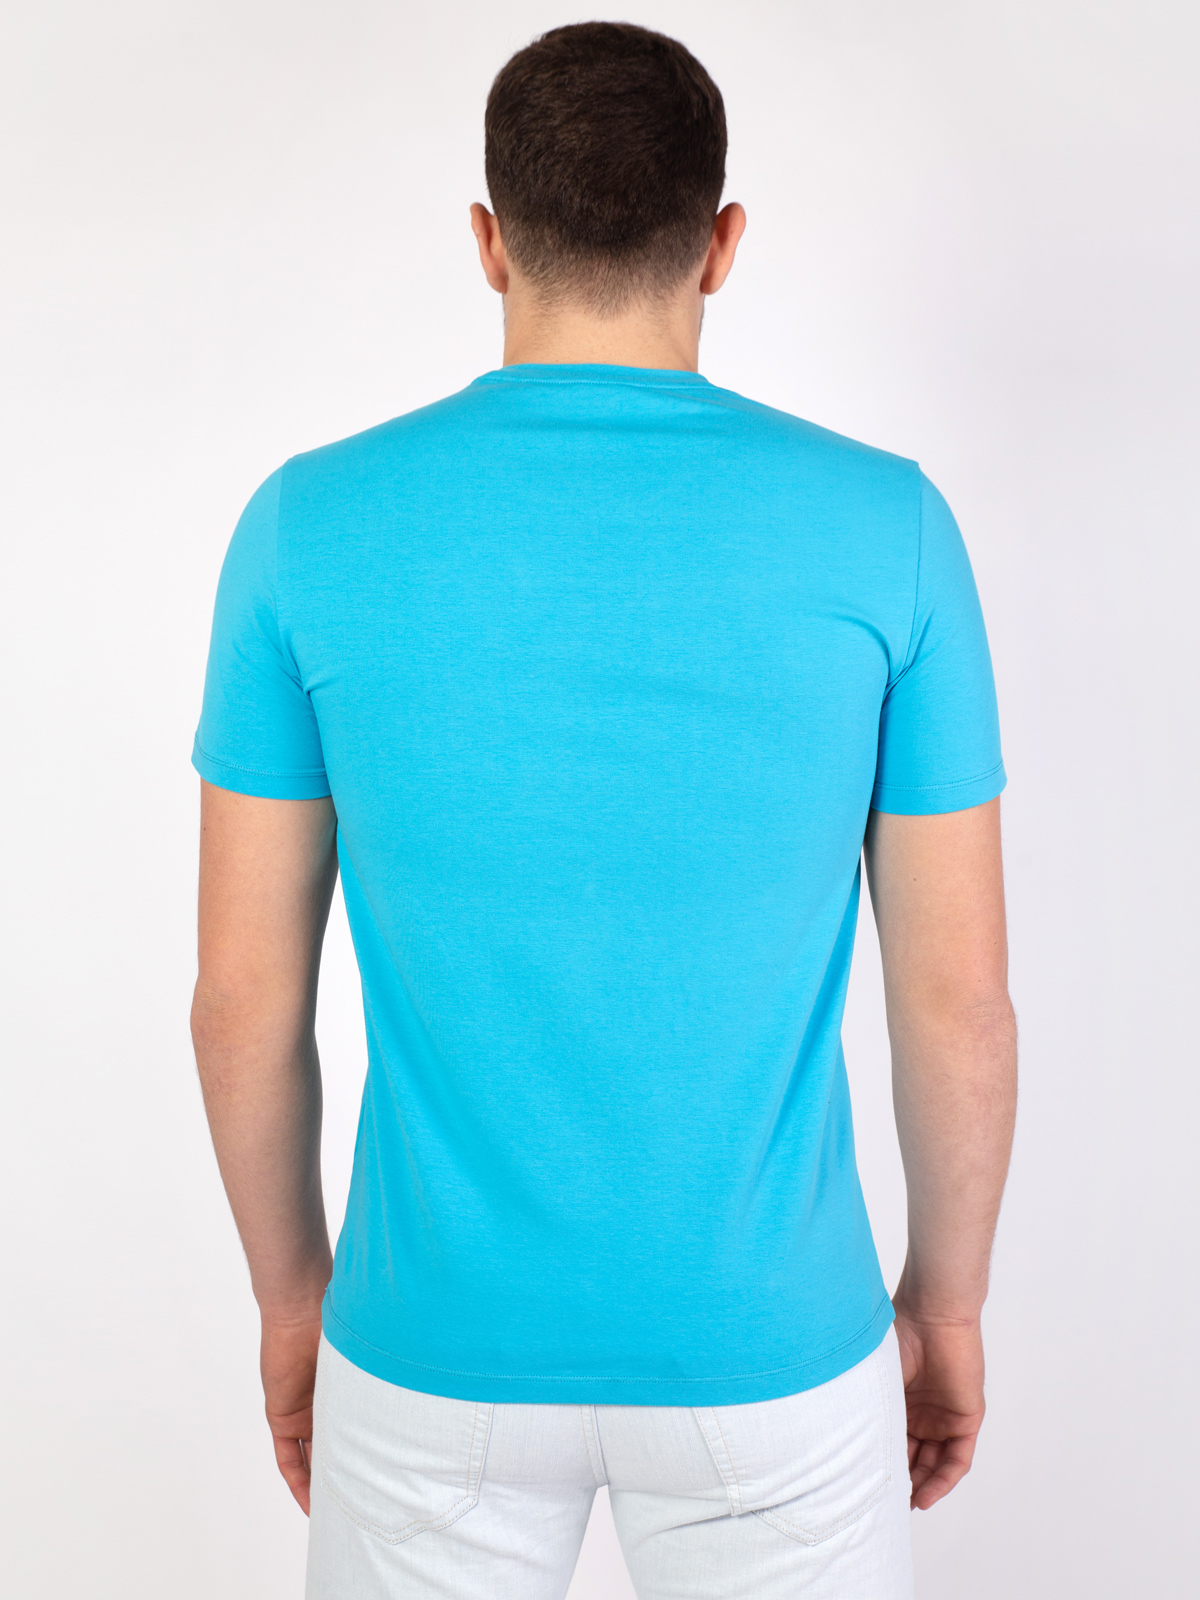 Синя тениска с принт в бяло и син - 96400 29.00 лв img4